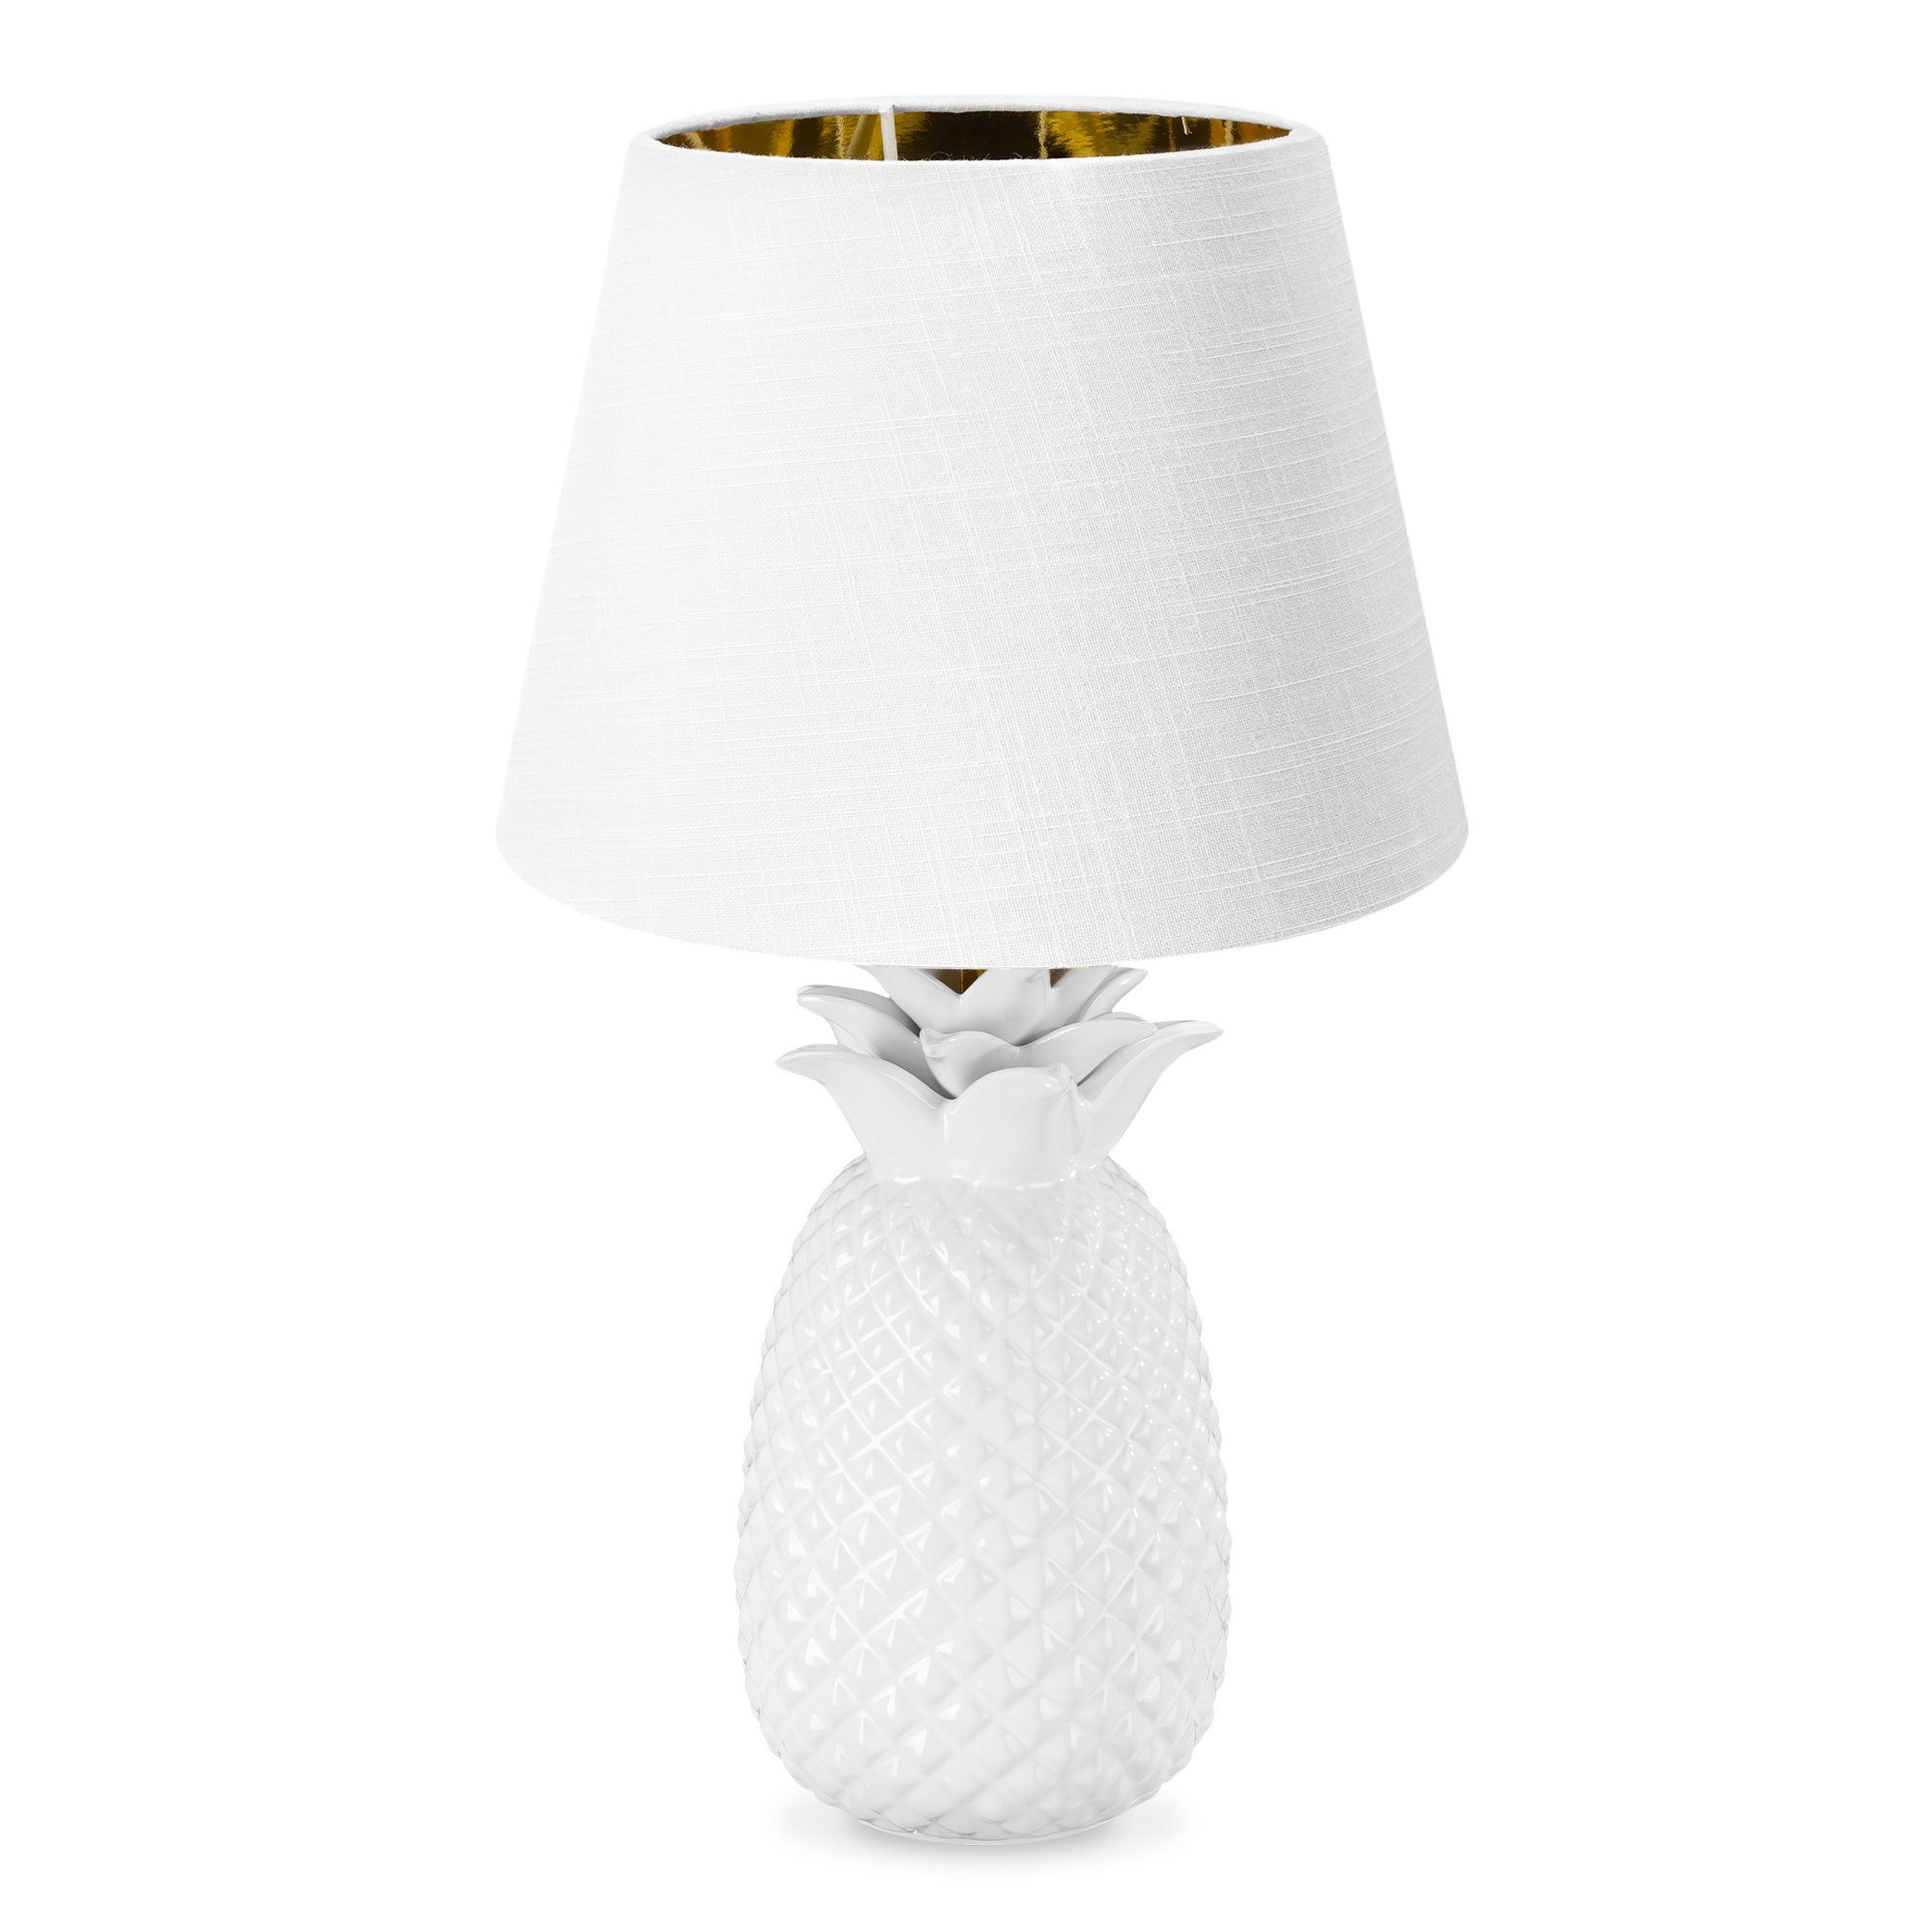 Navaris Tischleuchte Tischlampe Ananas Design - 40cm hoch - Dekolampe mit E27 Gewinde Weiß